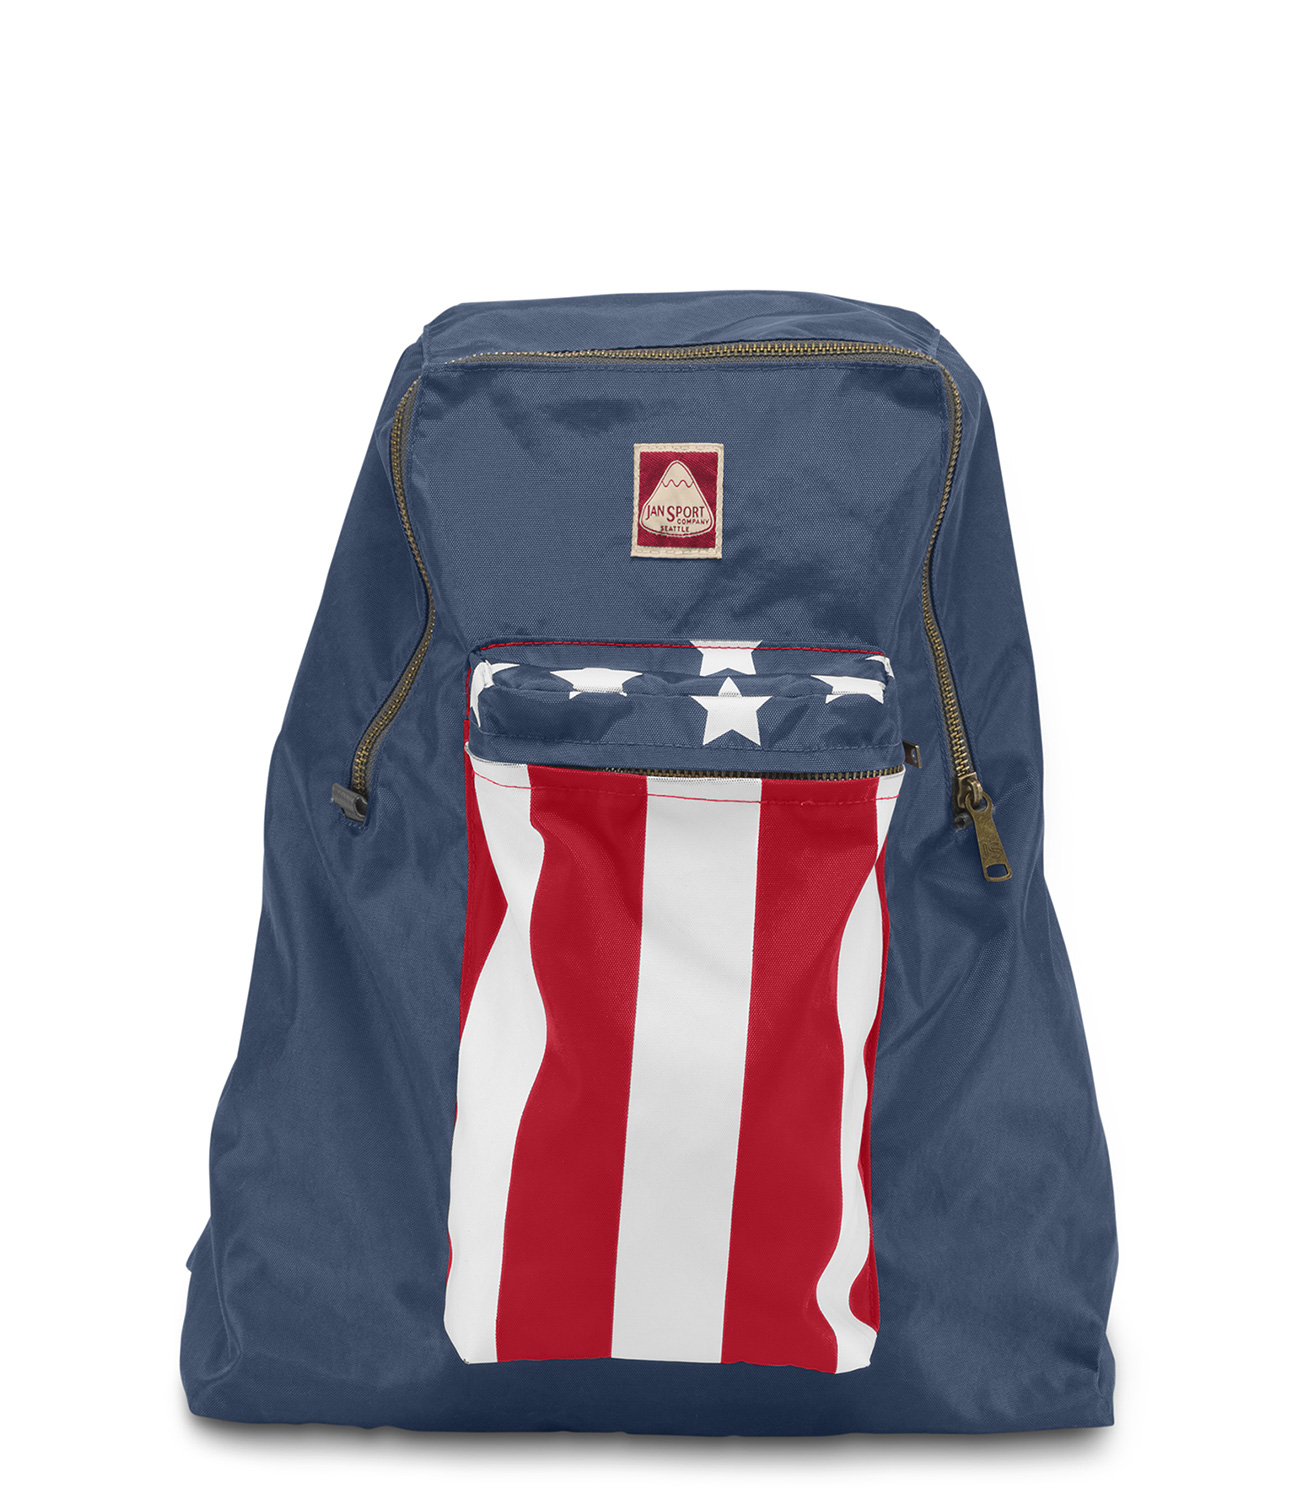 star jansport backpack